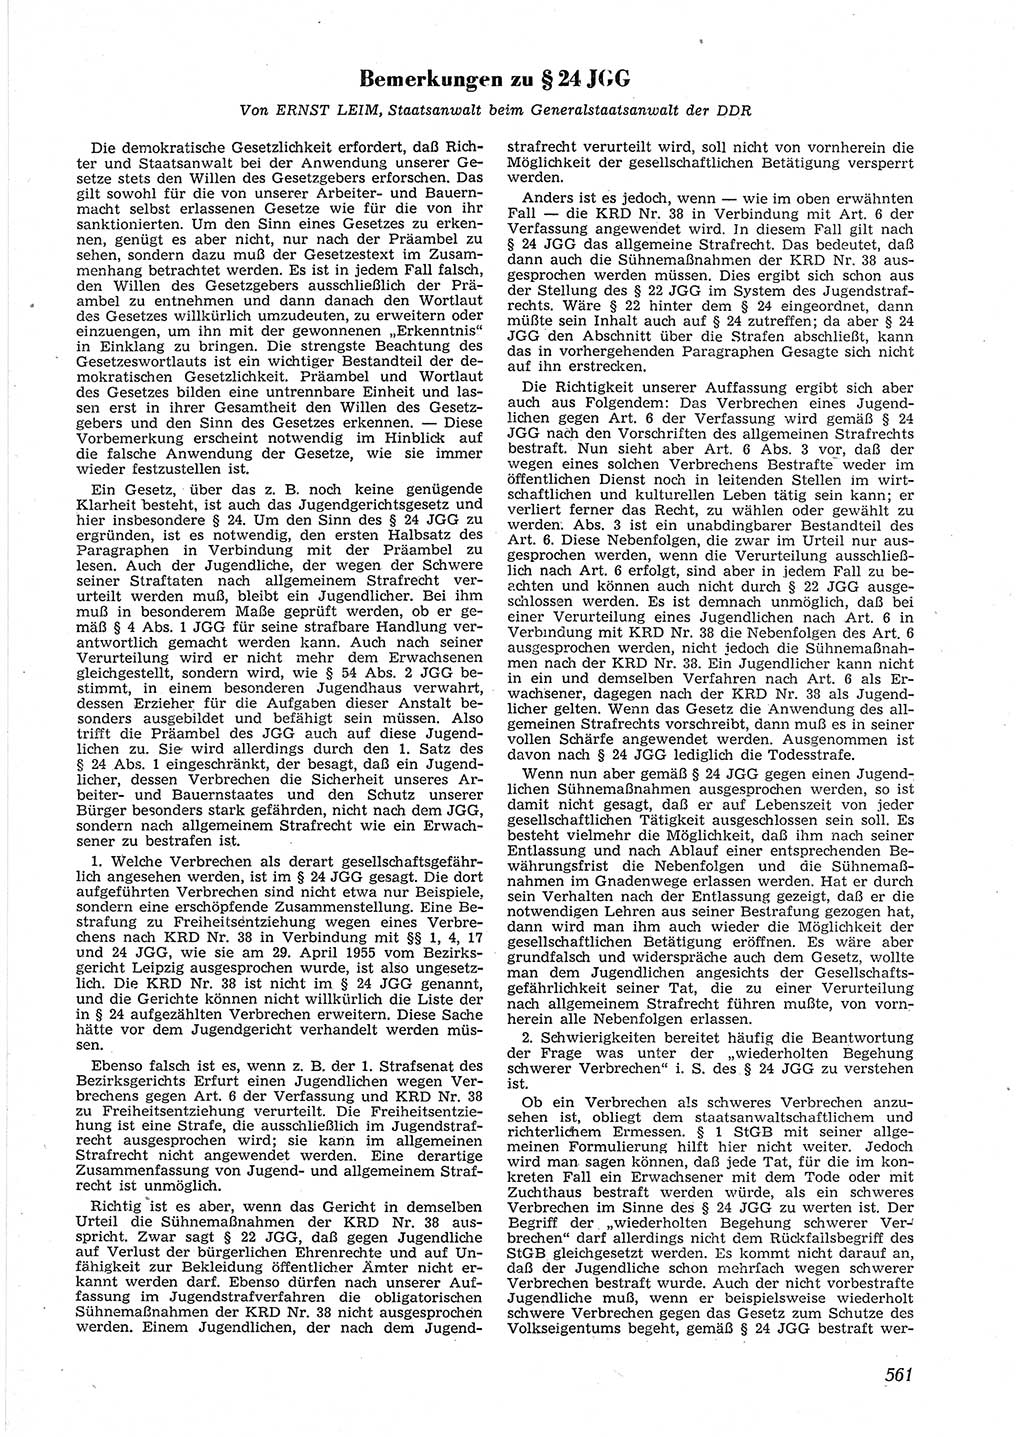 Neue Justiz (NJ), Zeitschrift für Recht und Rechtswissenschaft [Deutsche Demokratische Republik (DDR)], 9. Jahrgang 1955, Seite 561 (NJ DDR 1955, S. 561)